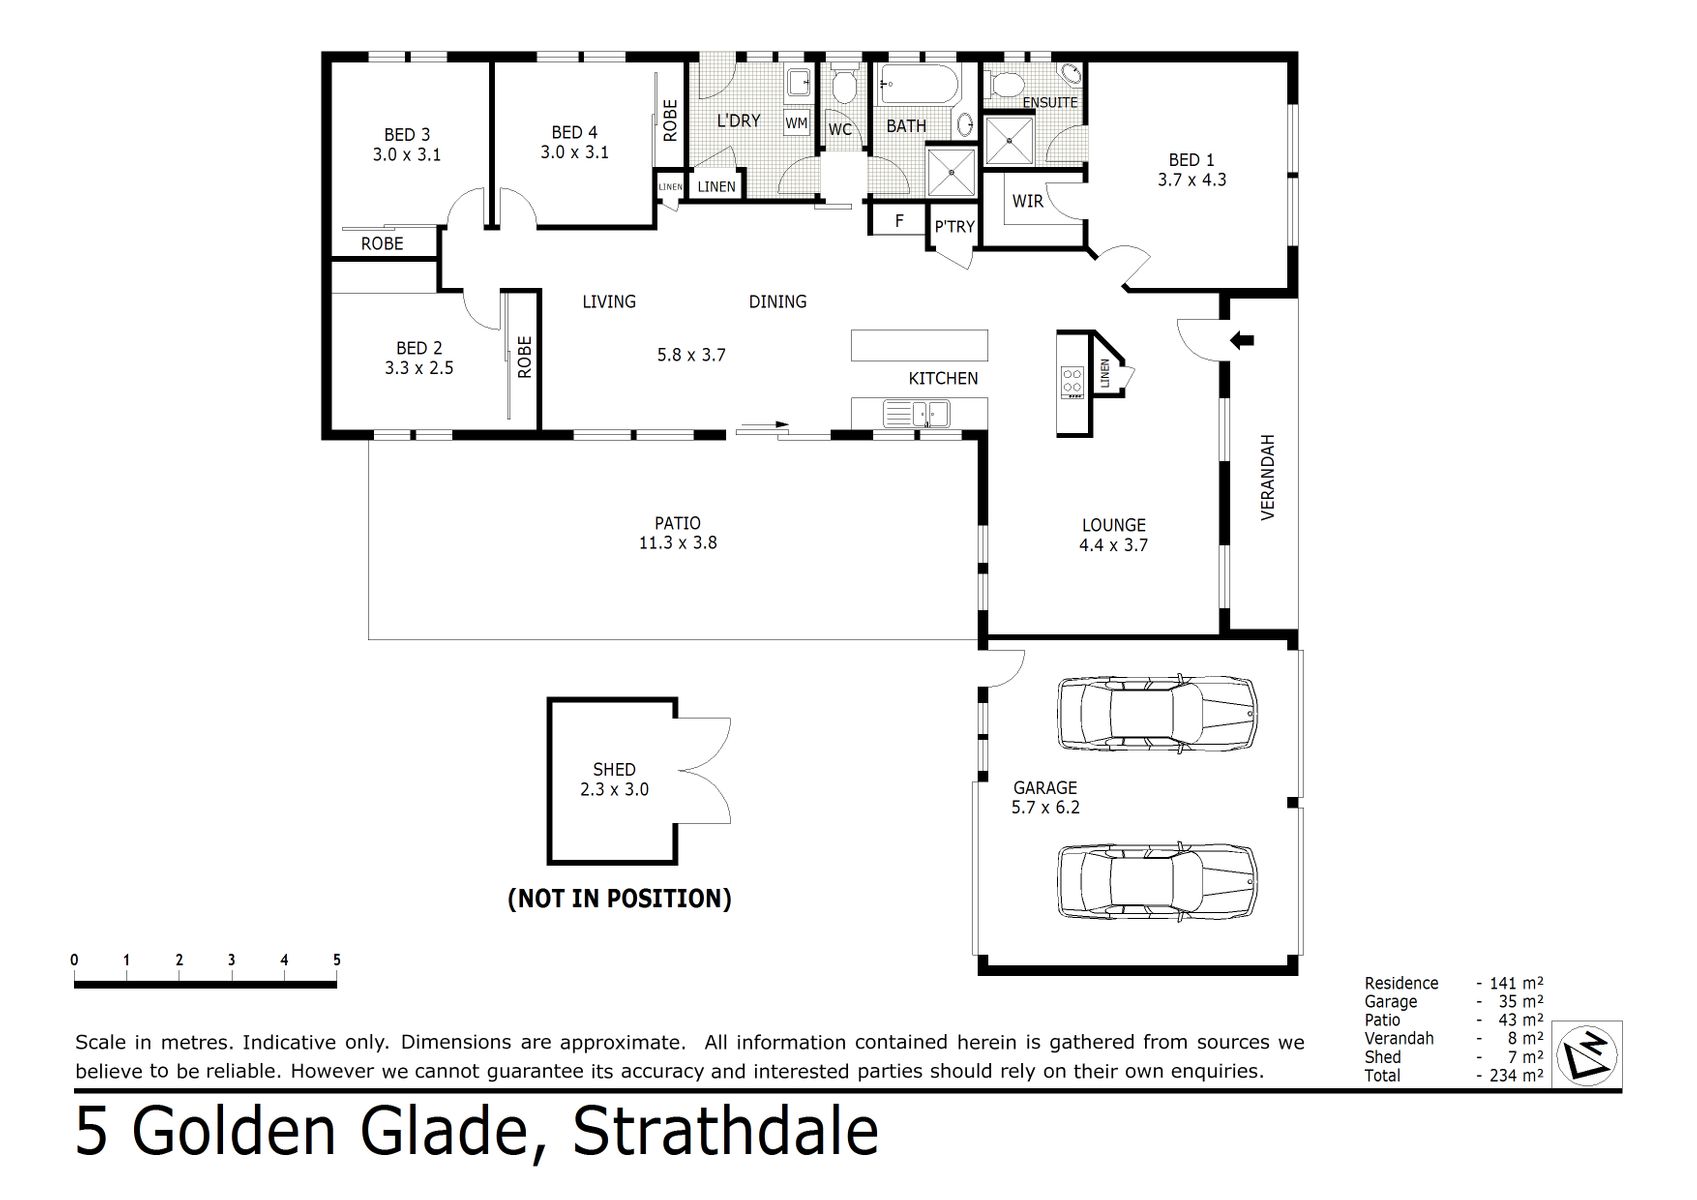 5 Golden Glade Strathdale (01 FEB 2021) 176sqm